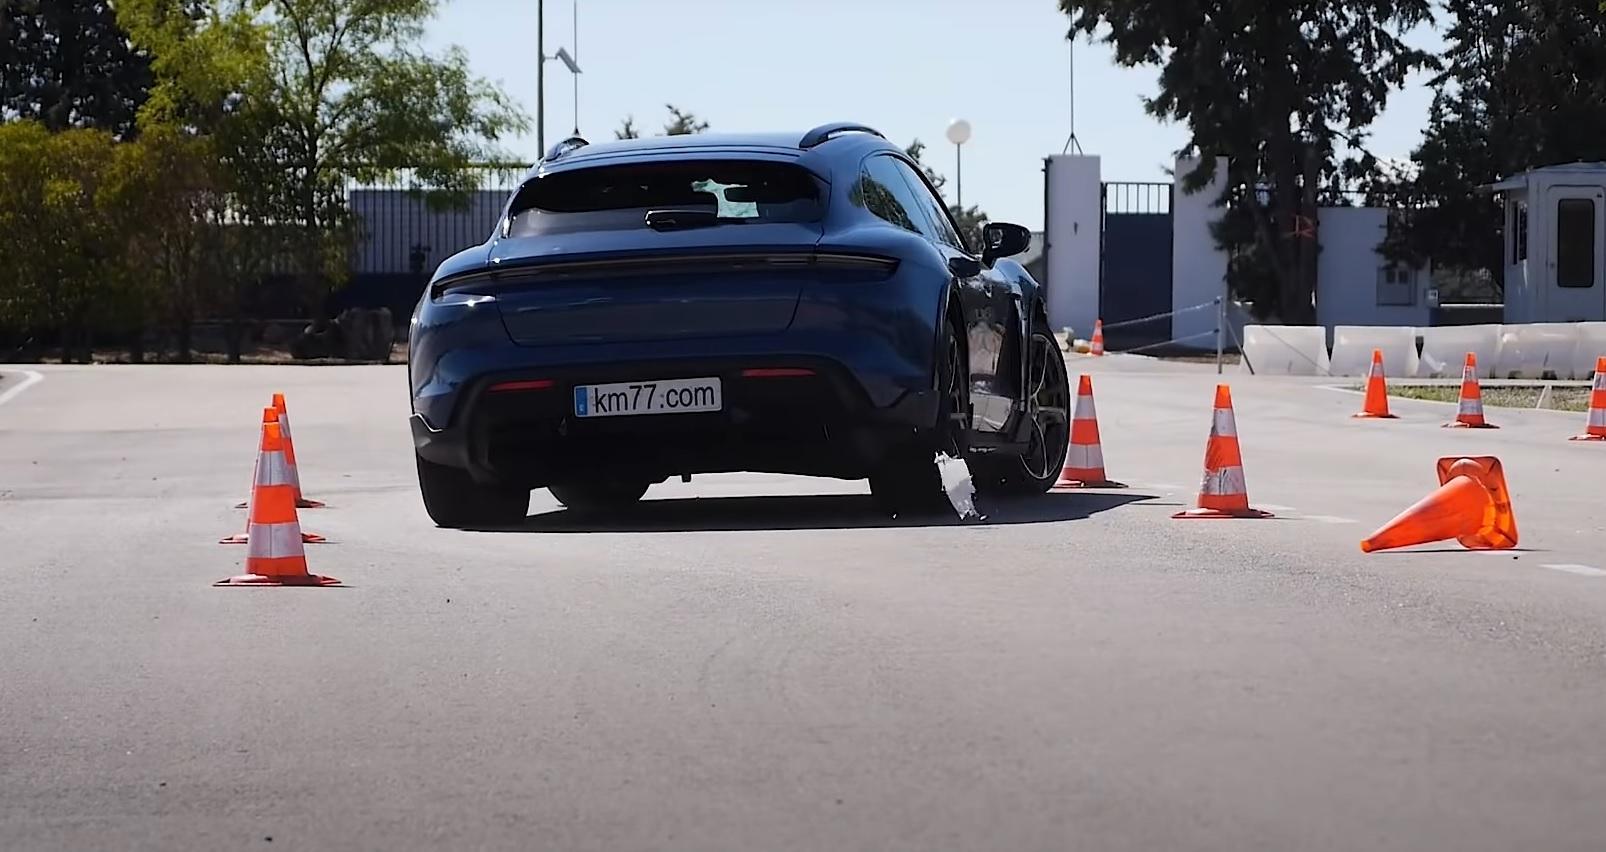 Porsche Tycan Cross Turismo: quanto contano 2,5 t nel test dell’alce?